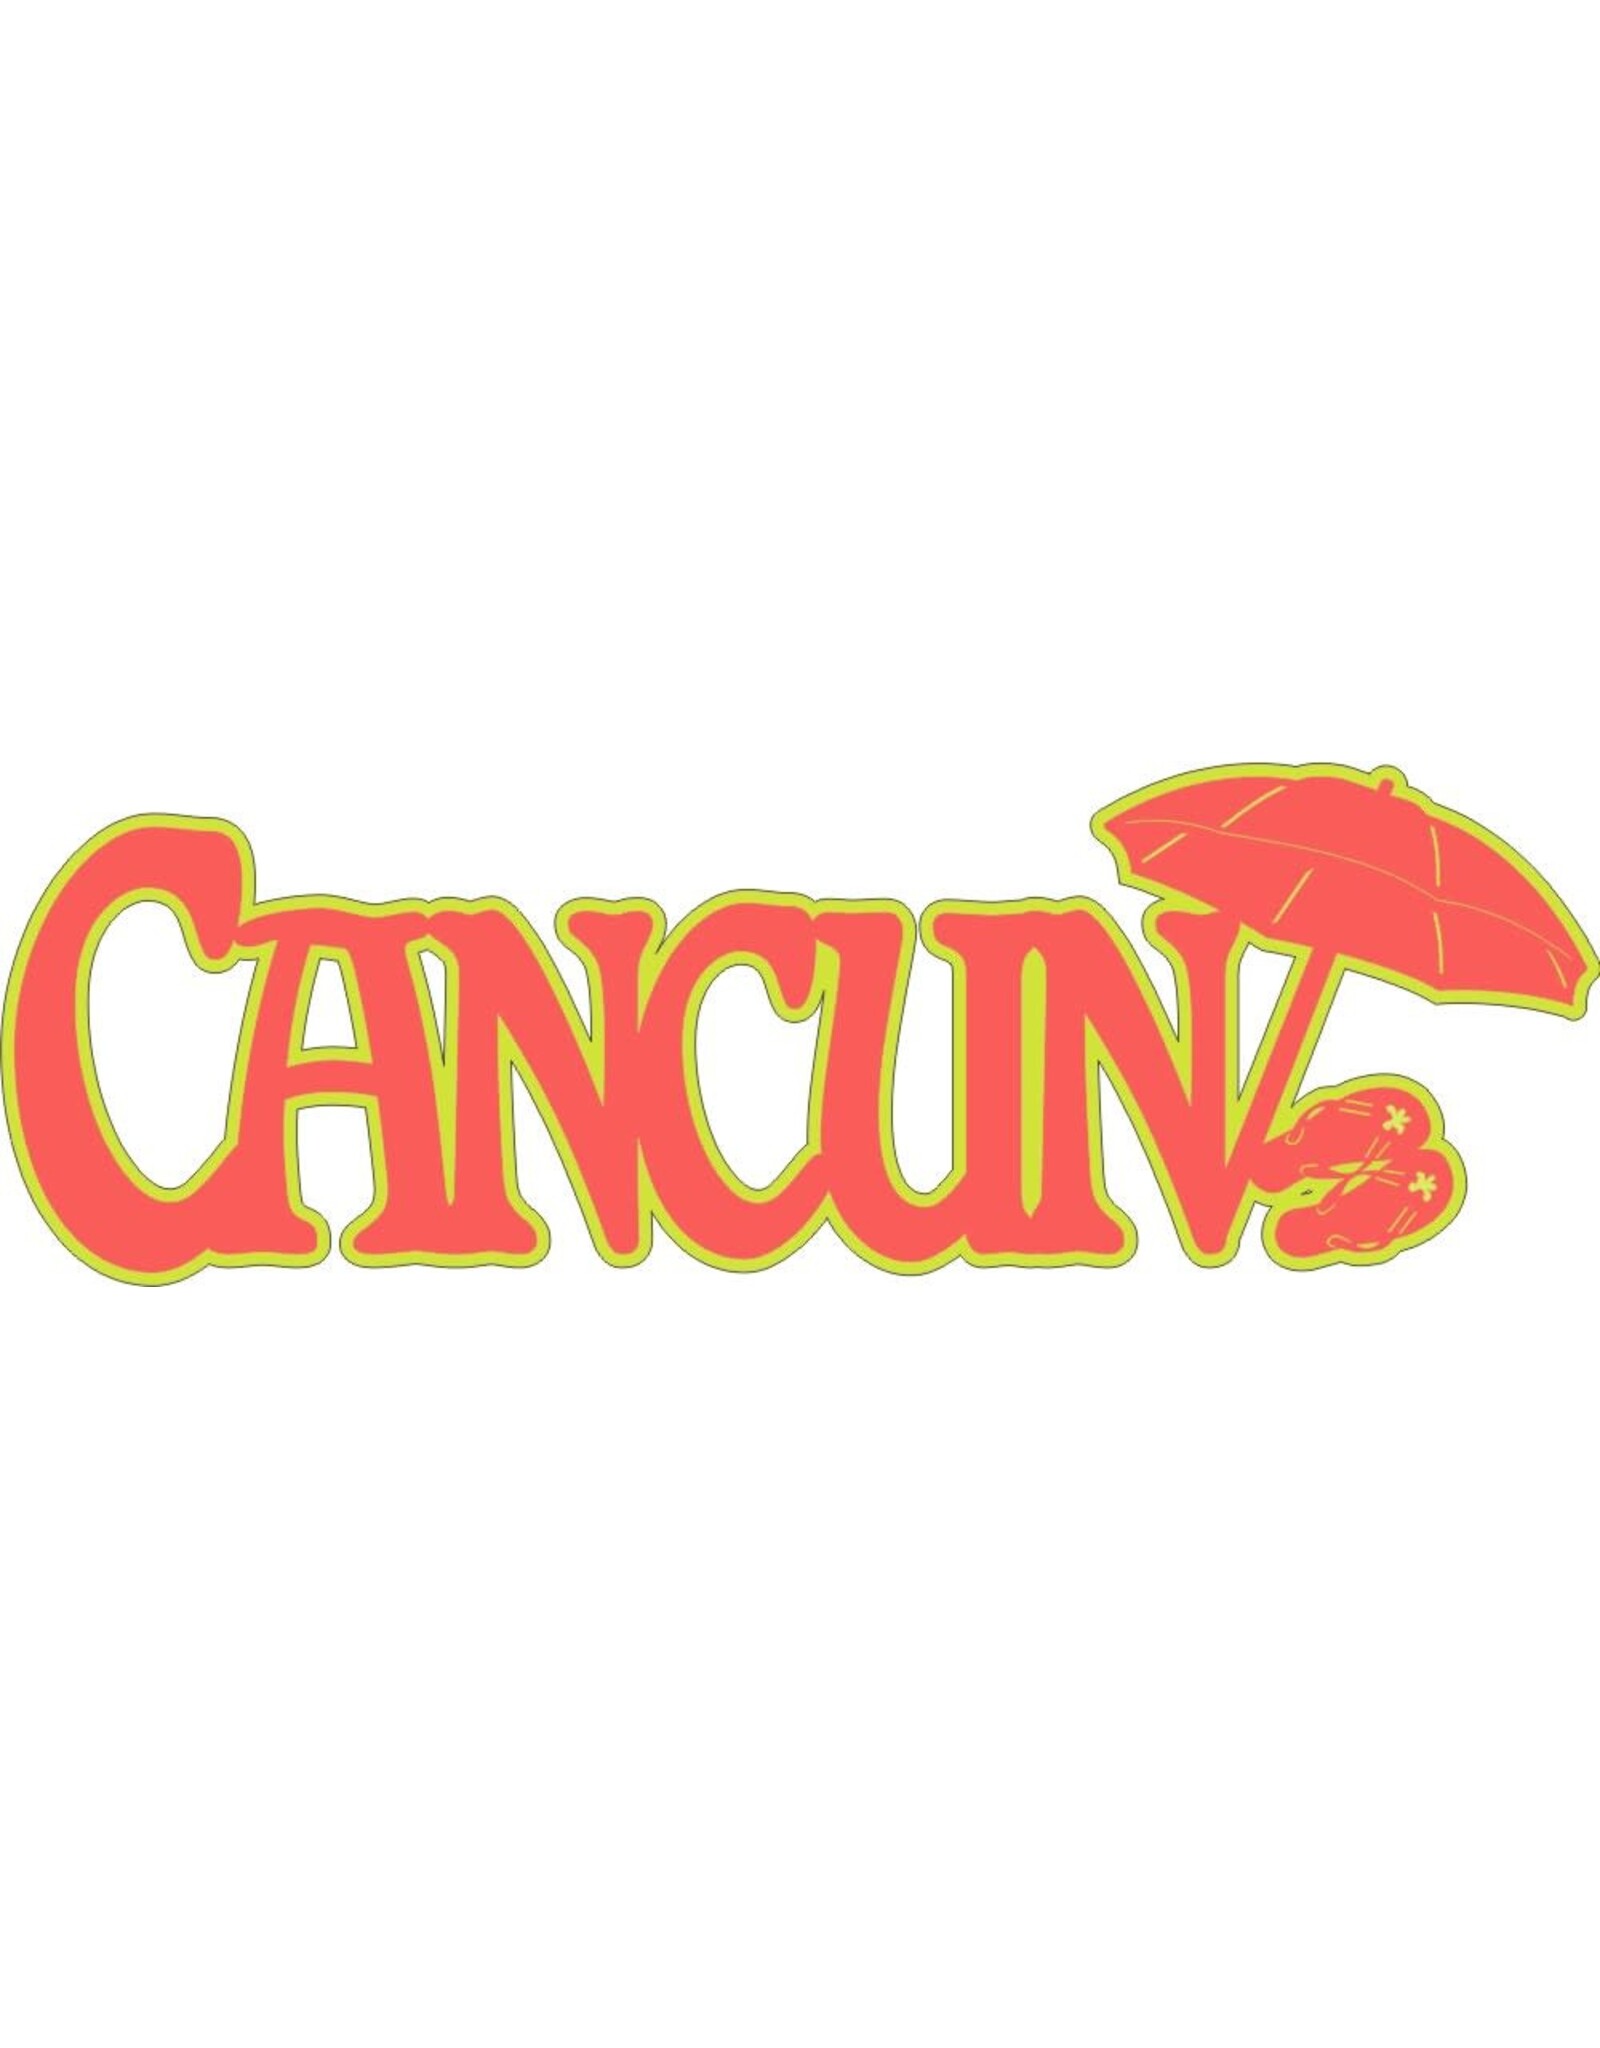 Cancun banner